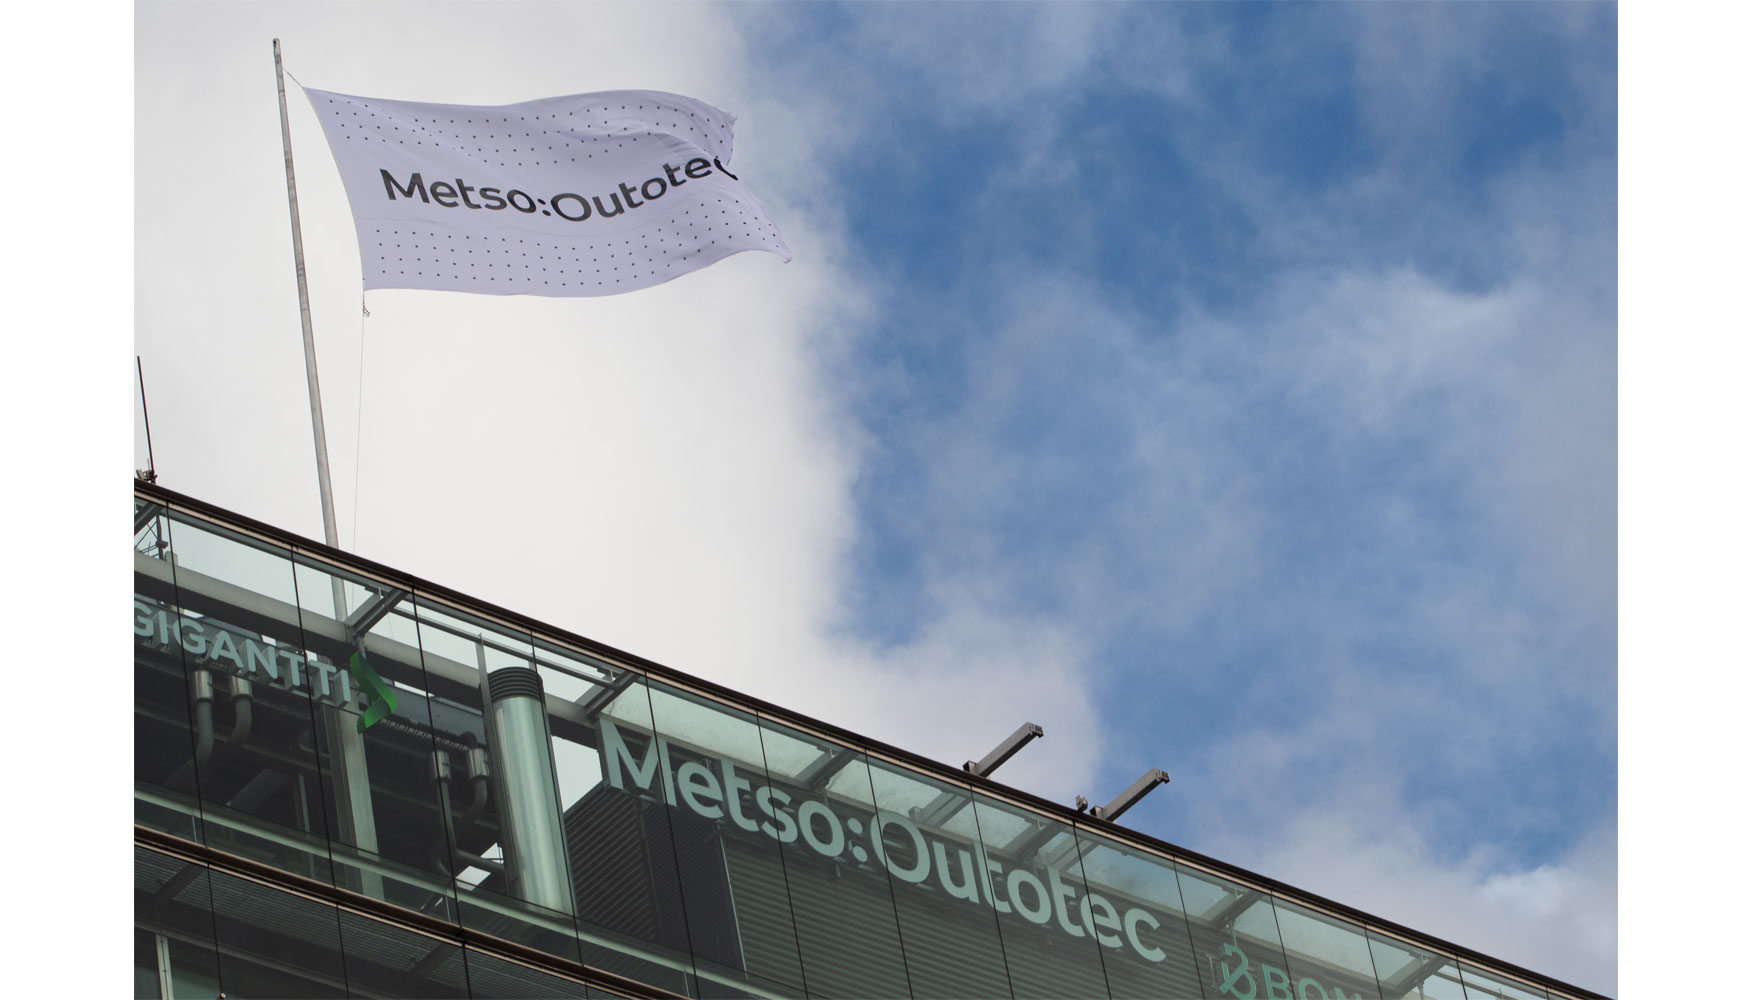 Metso Outotec tiene como objetivo ser un lder en sostenibilidad en la industria al generar un impacto neto positivo en el planeta...